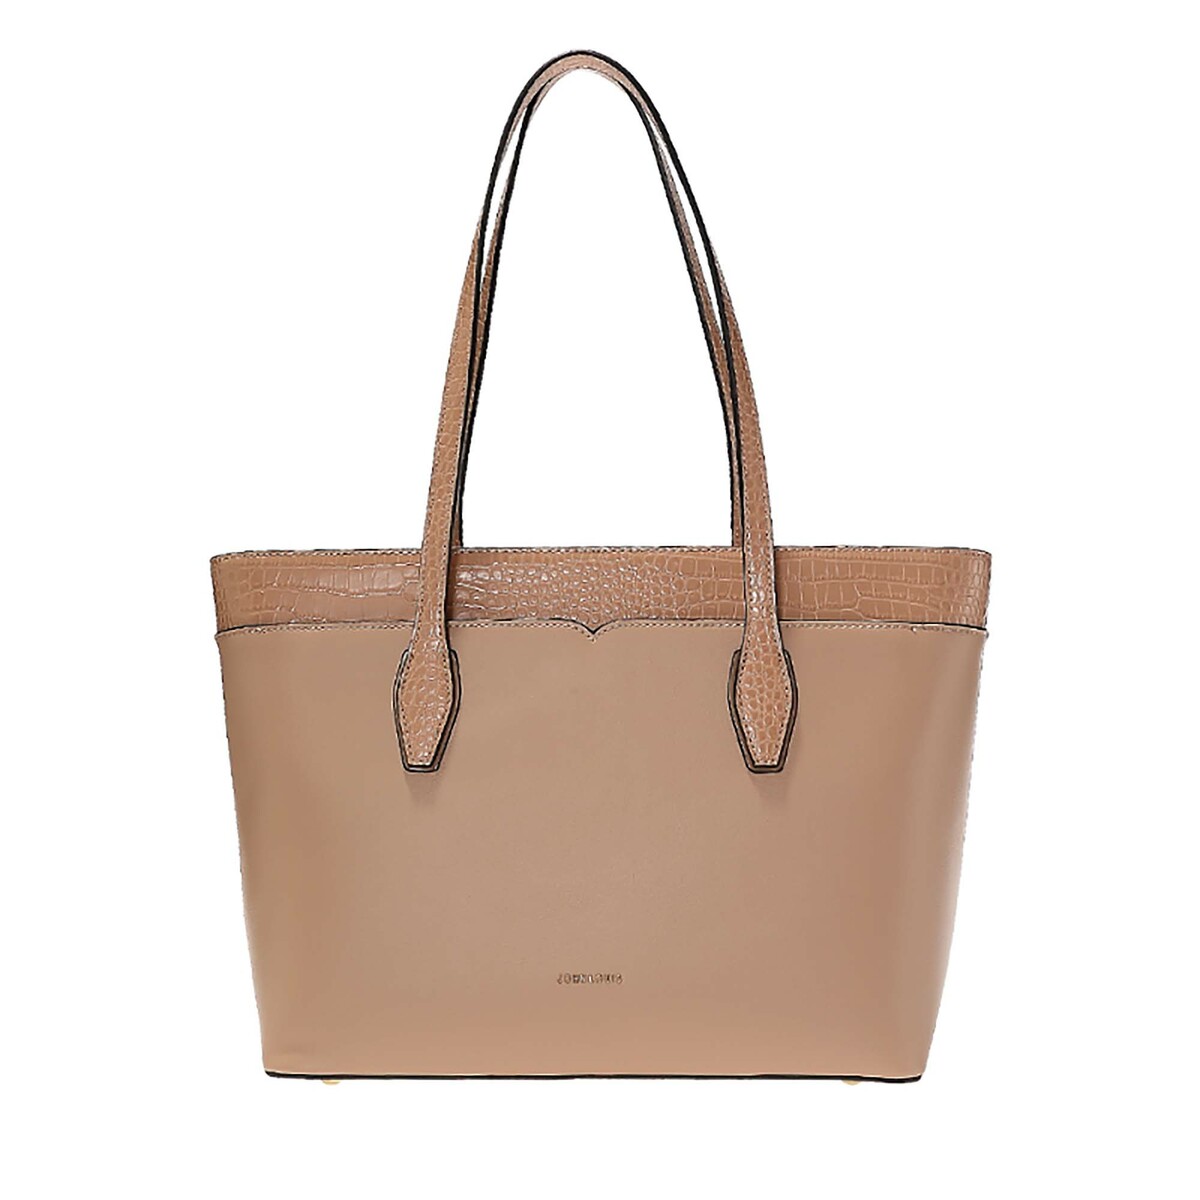 Buy John Louis Women's Bag JLSU232, Beige Online - Lulu Hypermarket UAE